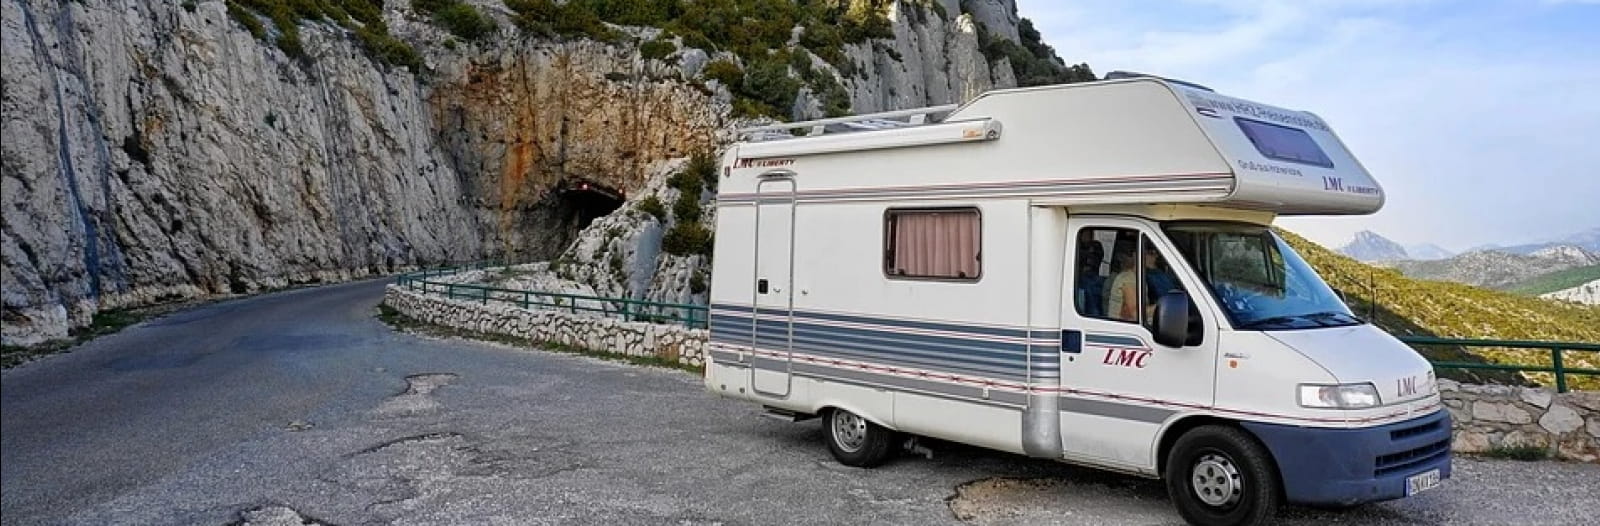 aires de camping car Tarentaise Savoie